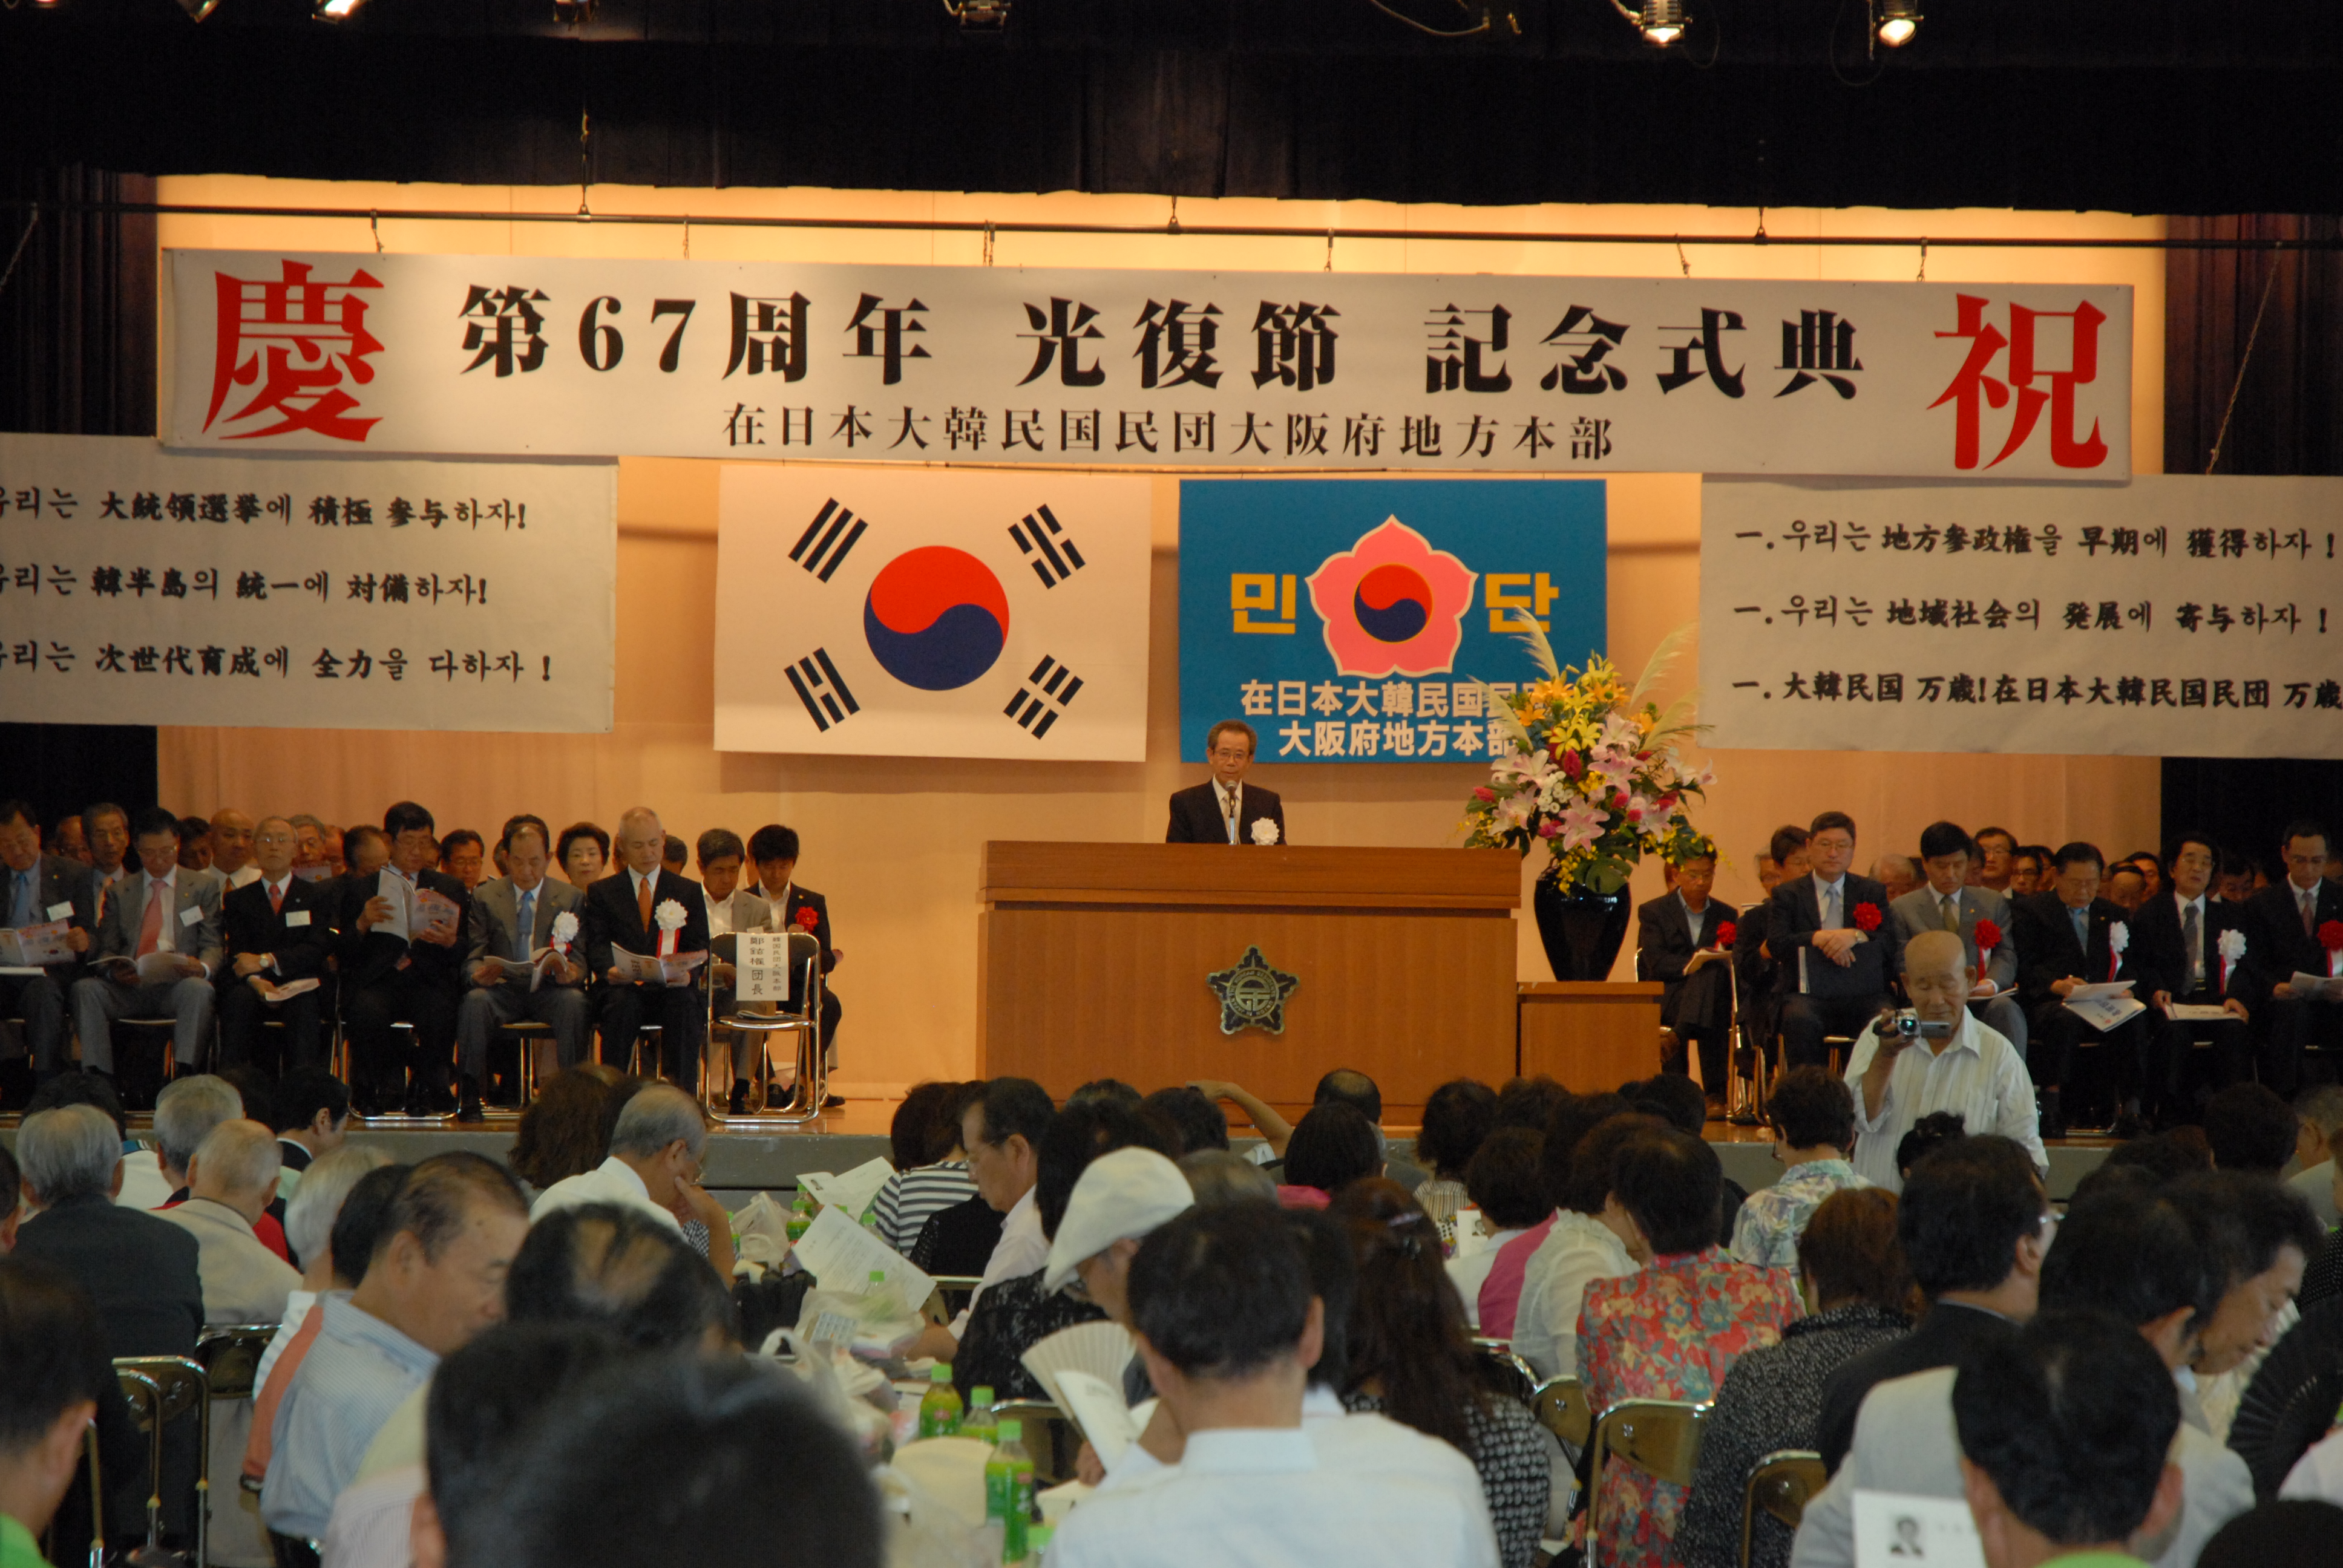 　　　第67周年光復節記念式典には800名が参加した